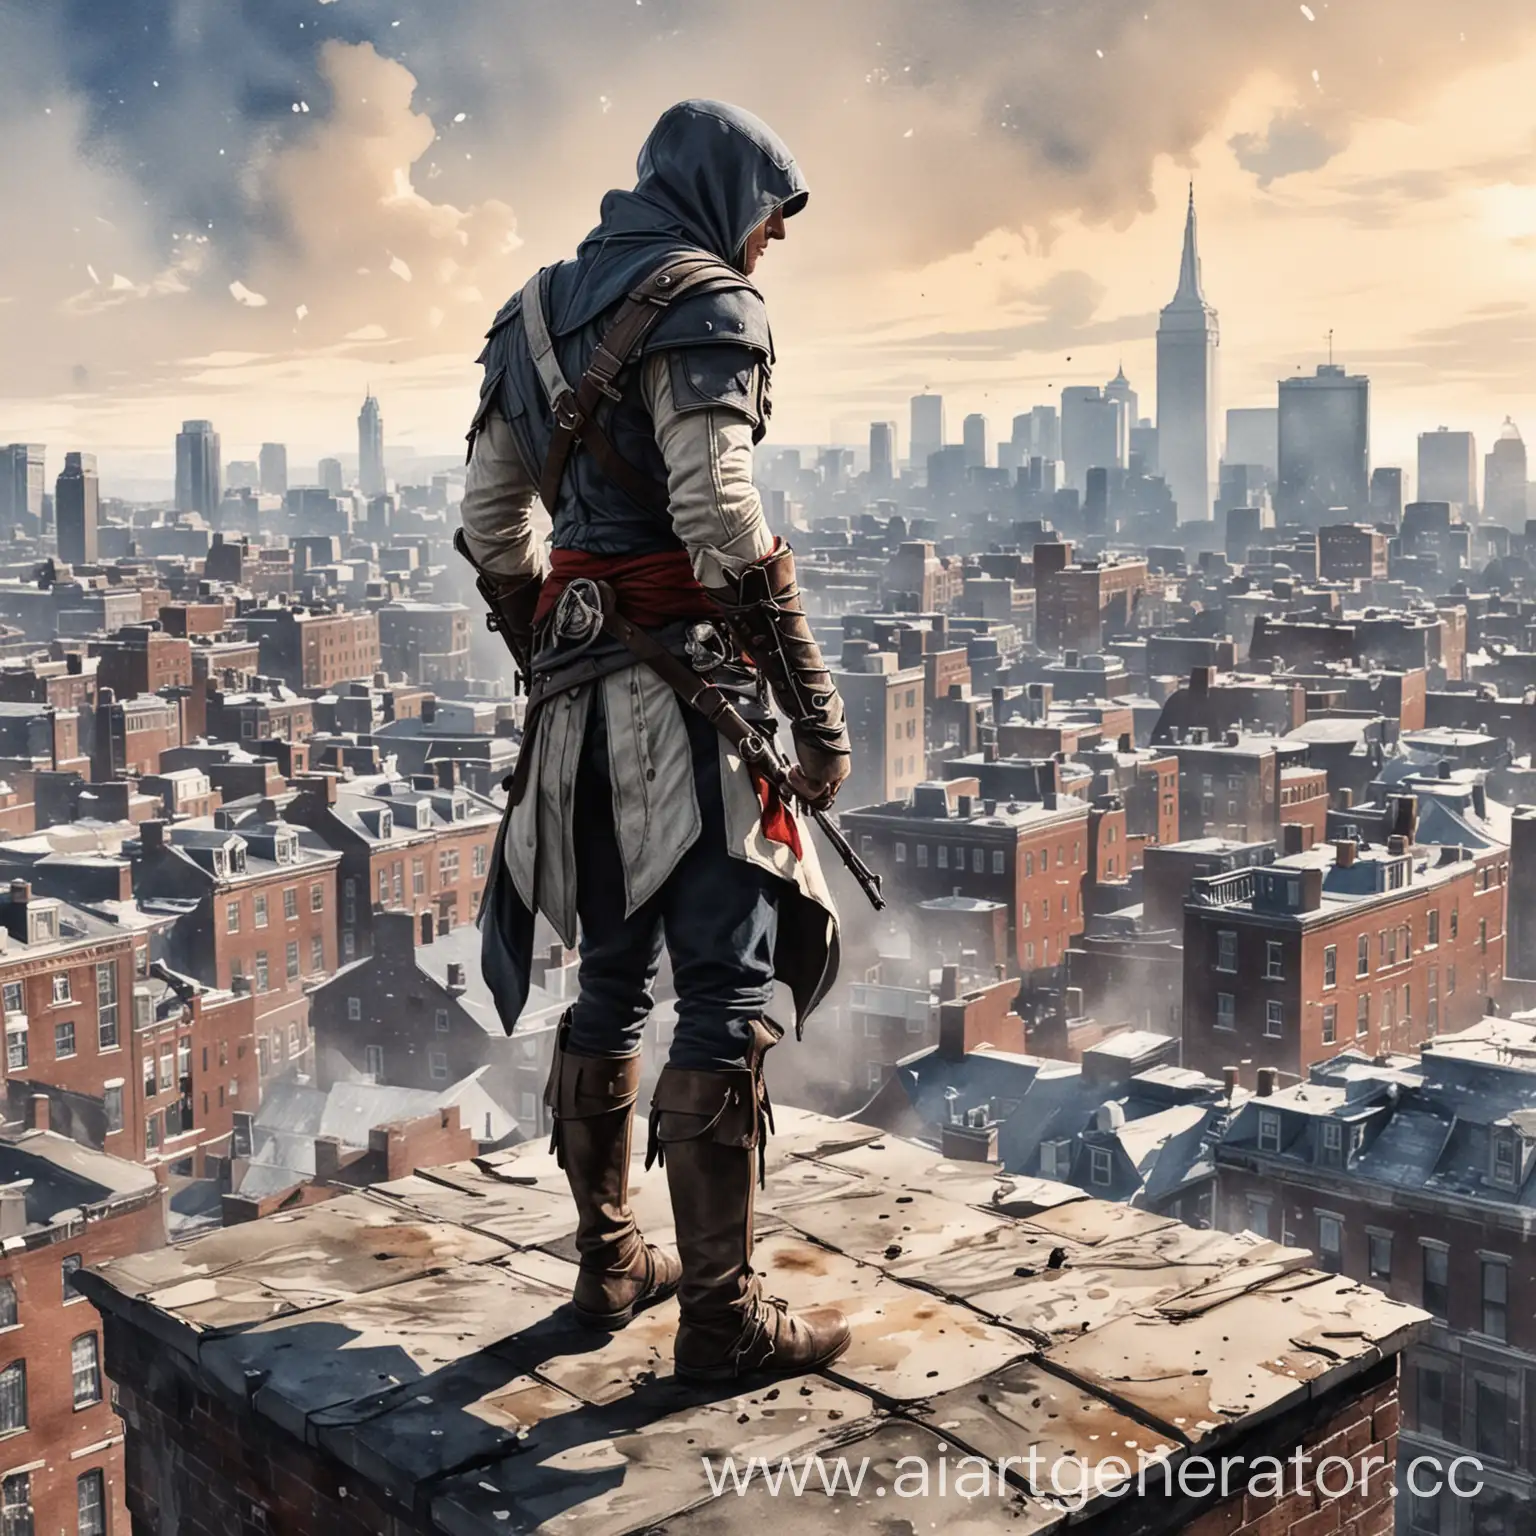 Нарисуй то, где главный герой "Коннор" из assassins creed 3 стоит на крыше вместе с отцом "Хейтемом", с видом на город Бостон, акварелью, hd